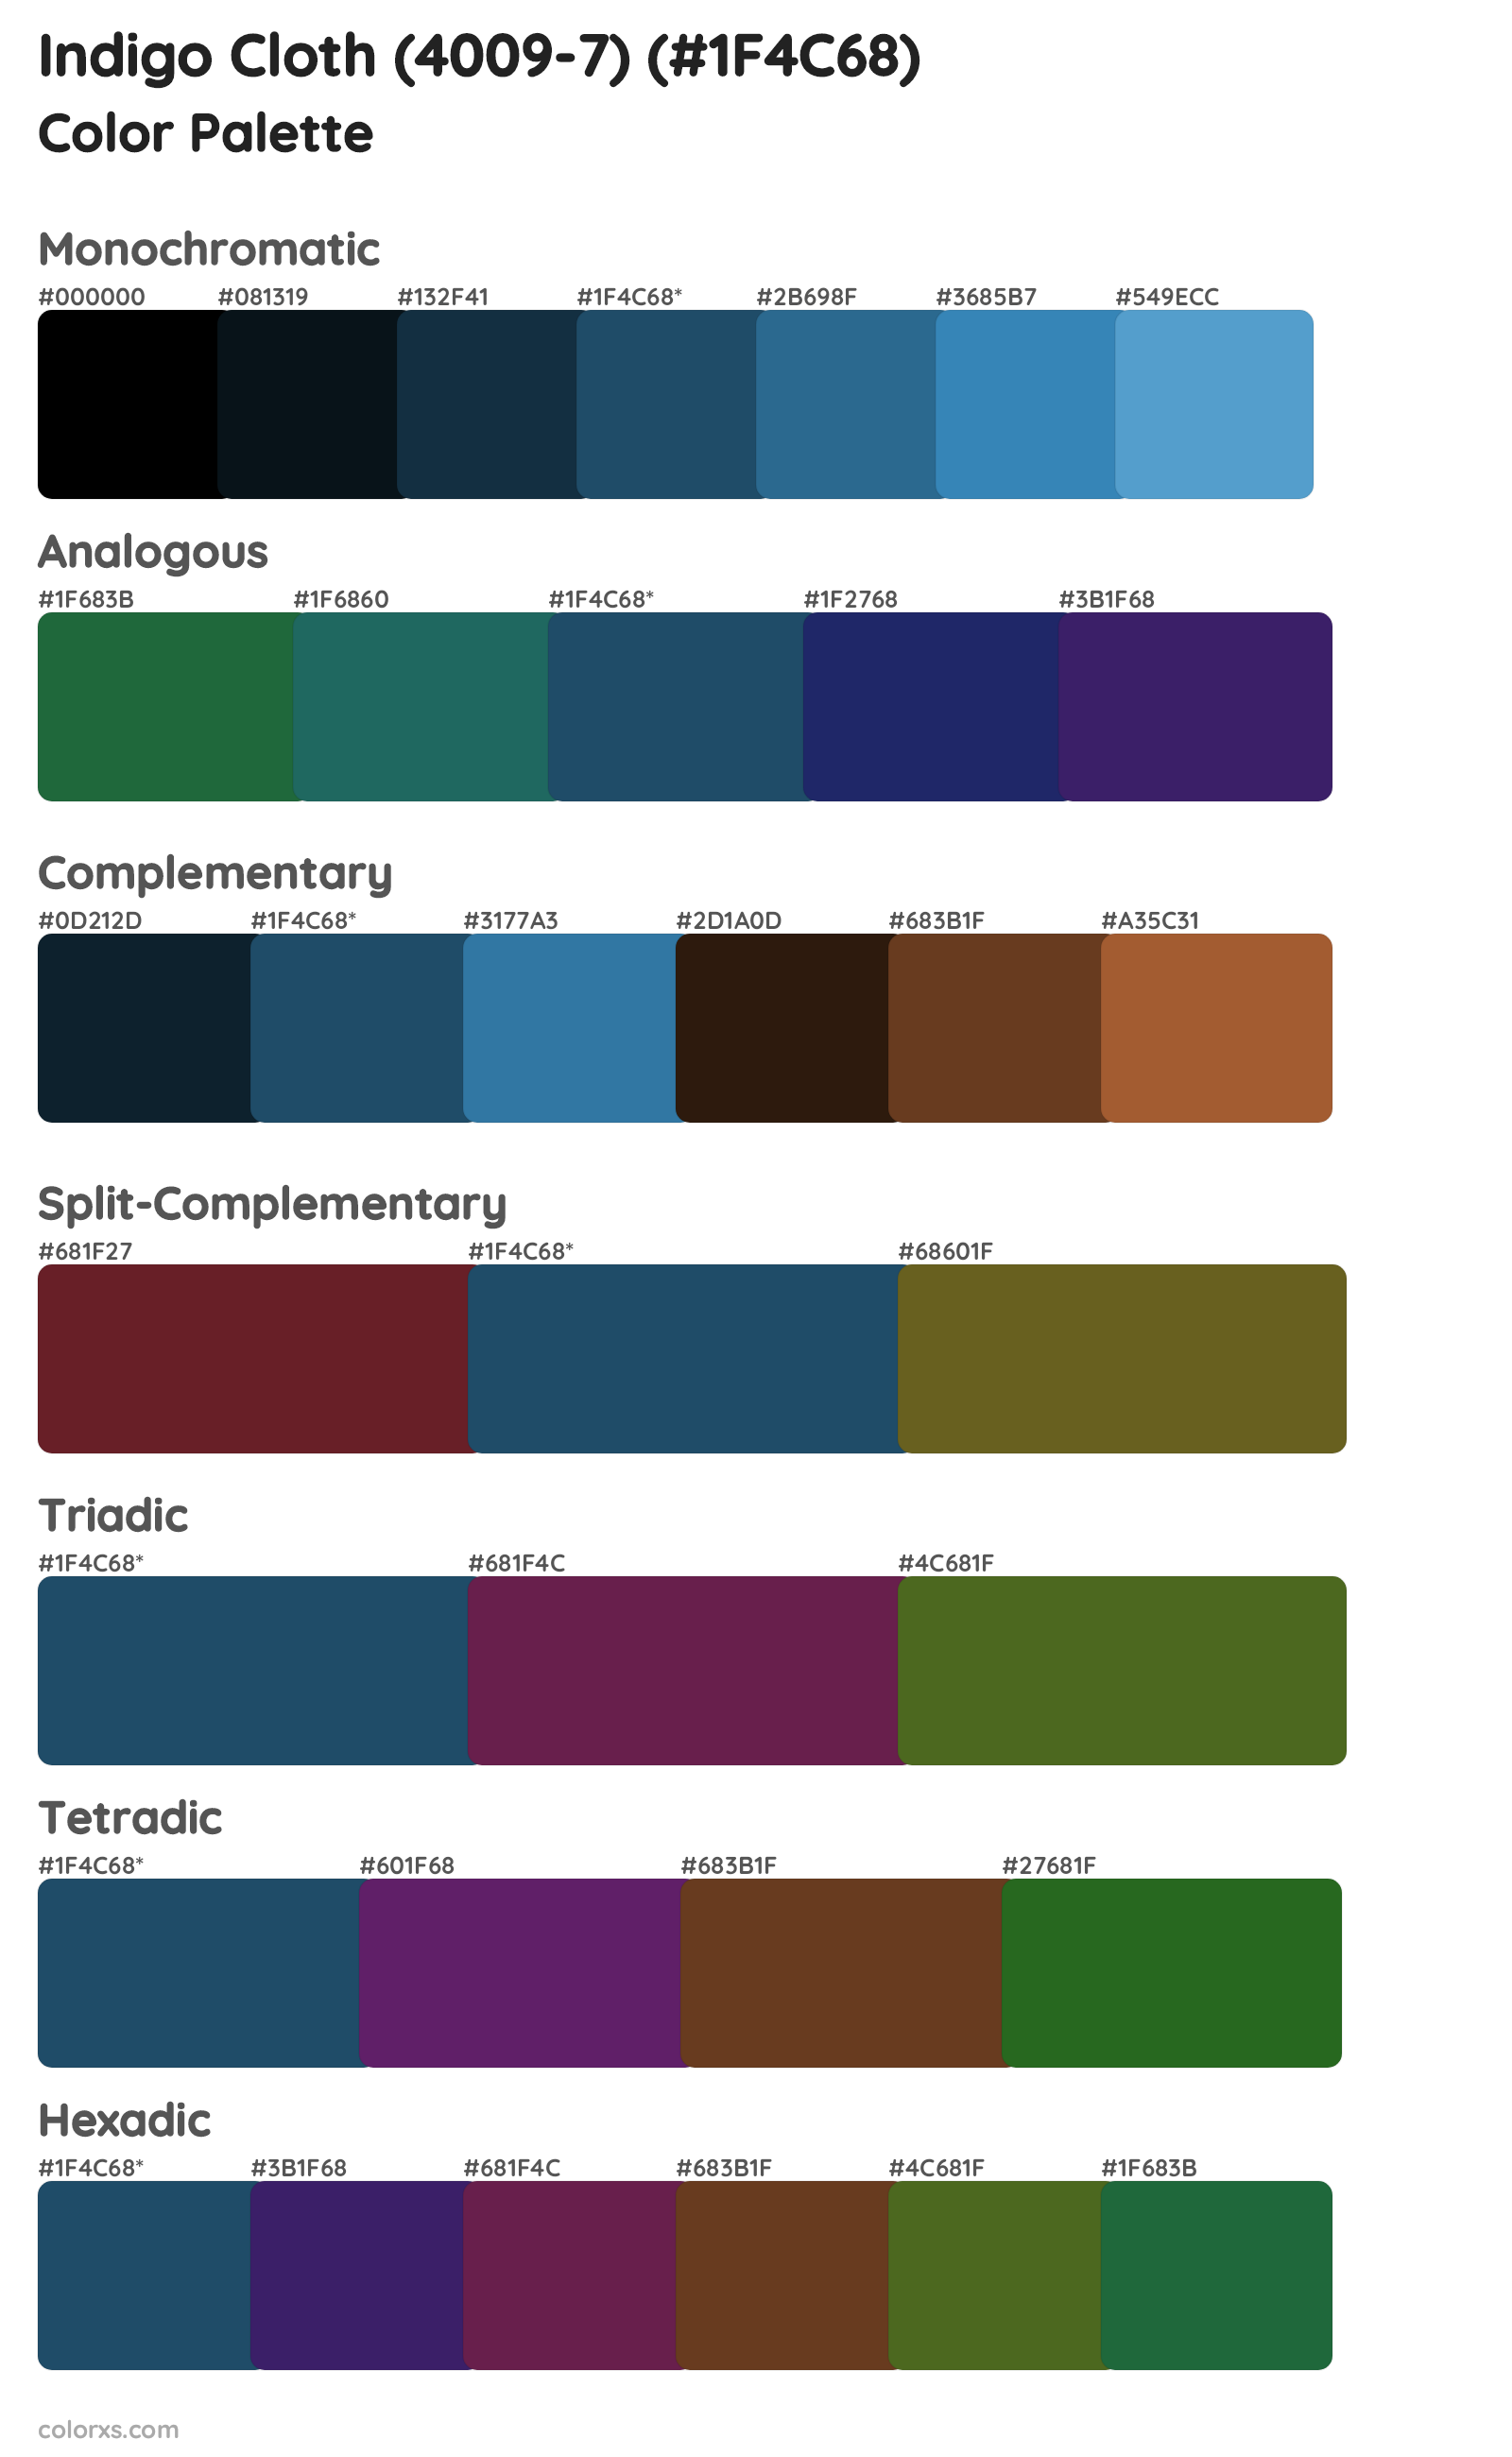 Indigo Cloth (4009-7) Color Scheme Palettes